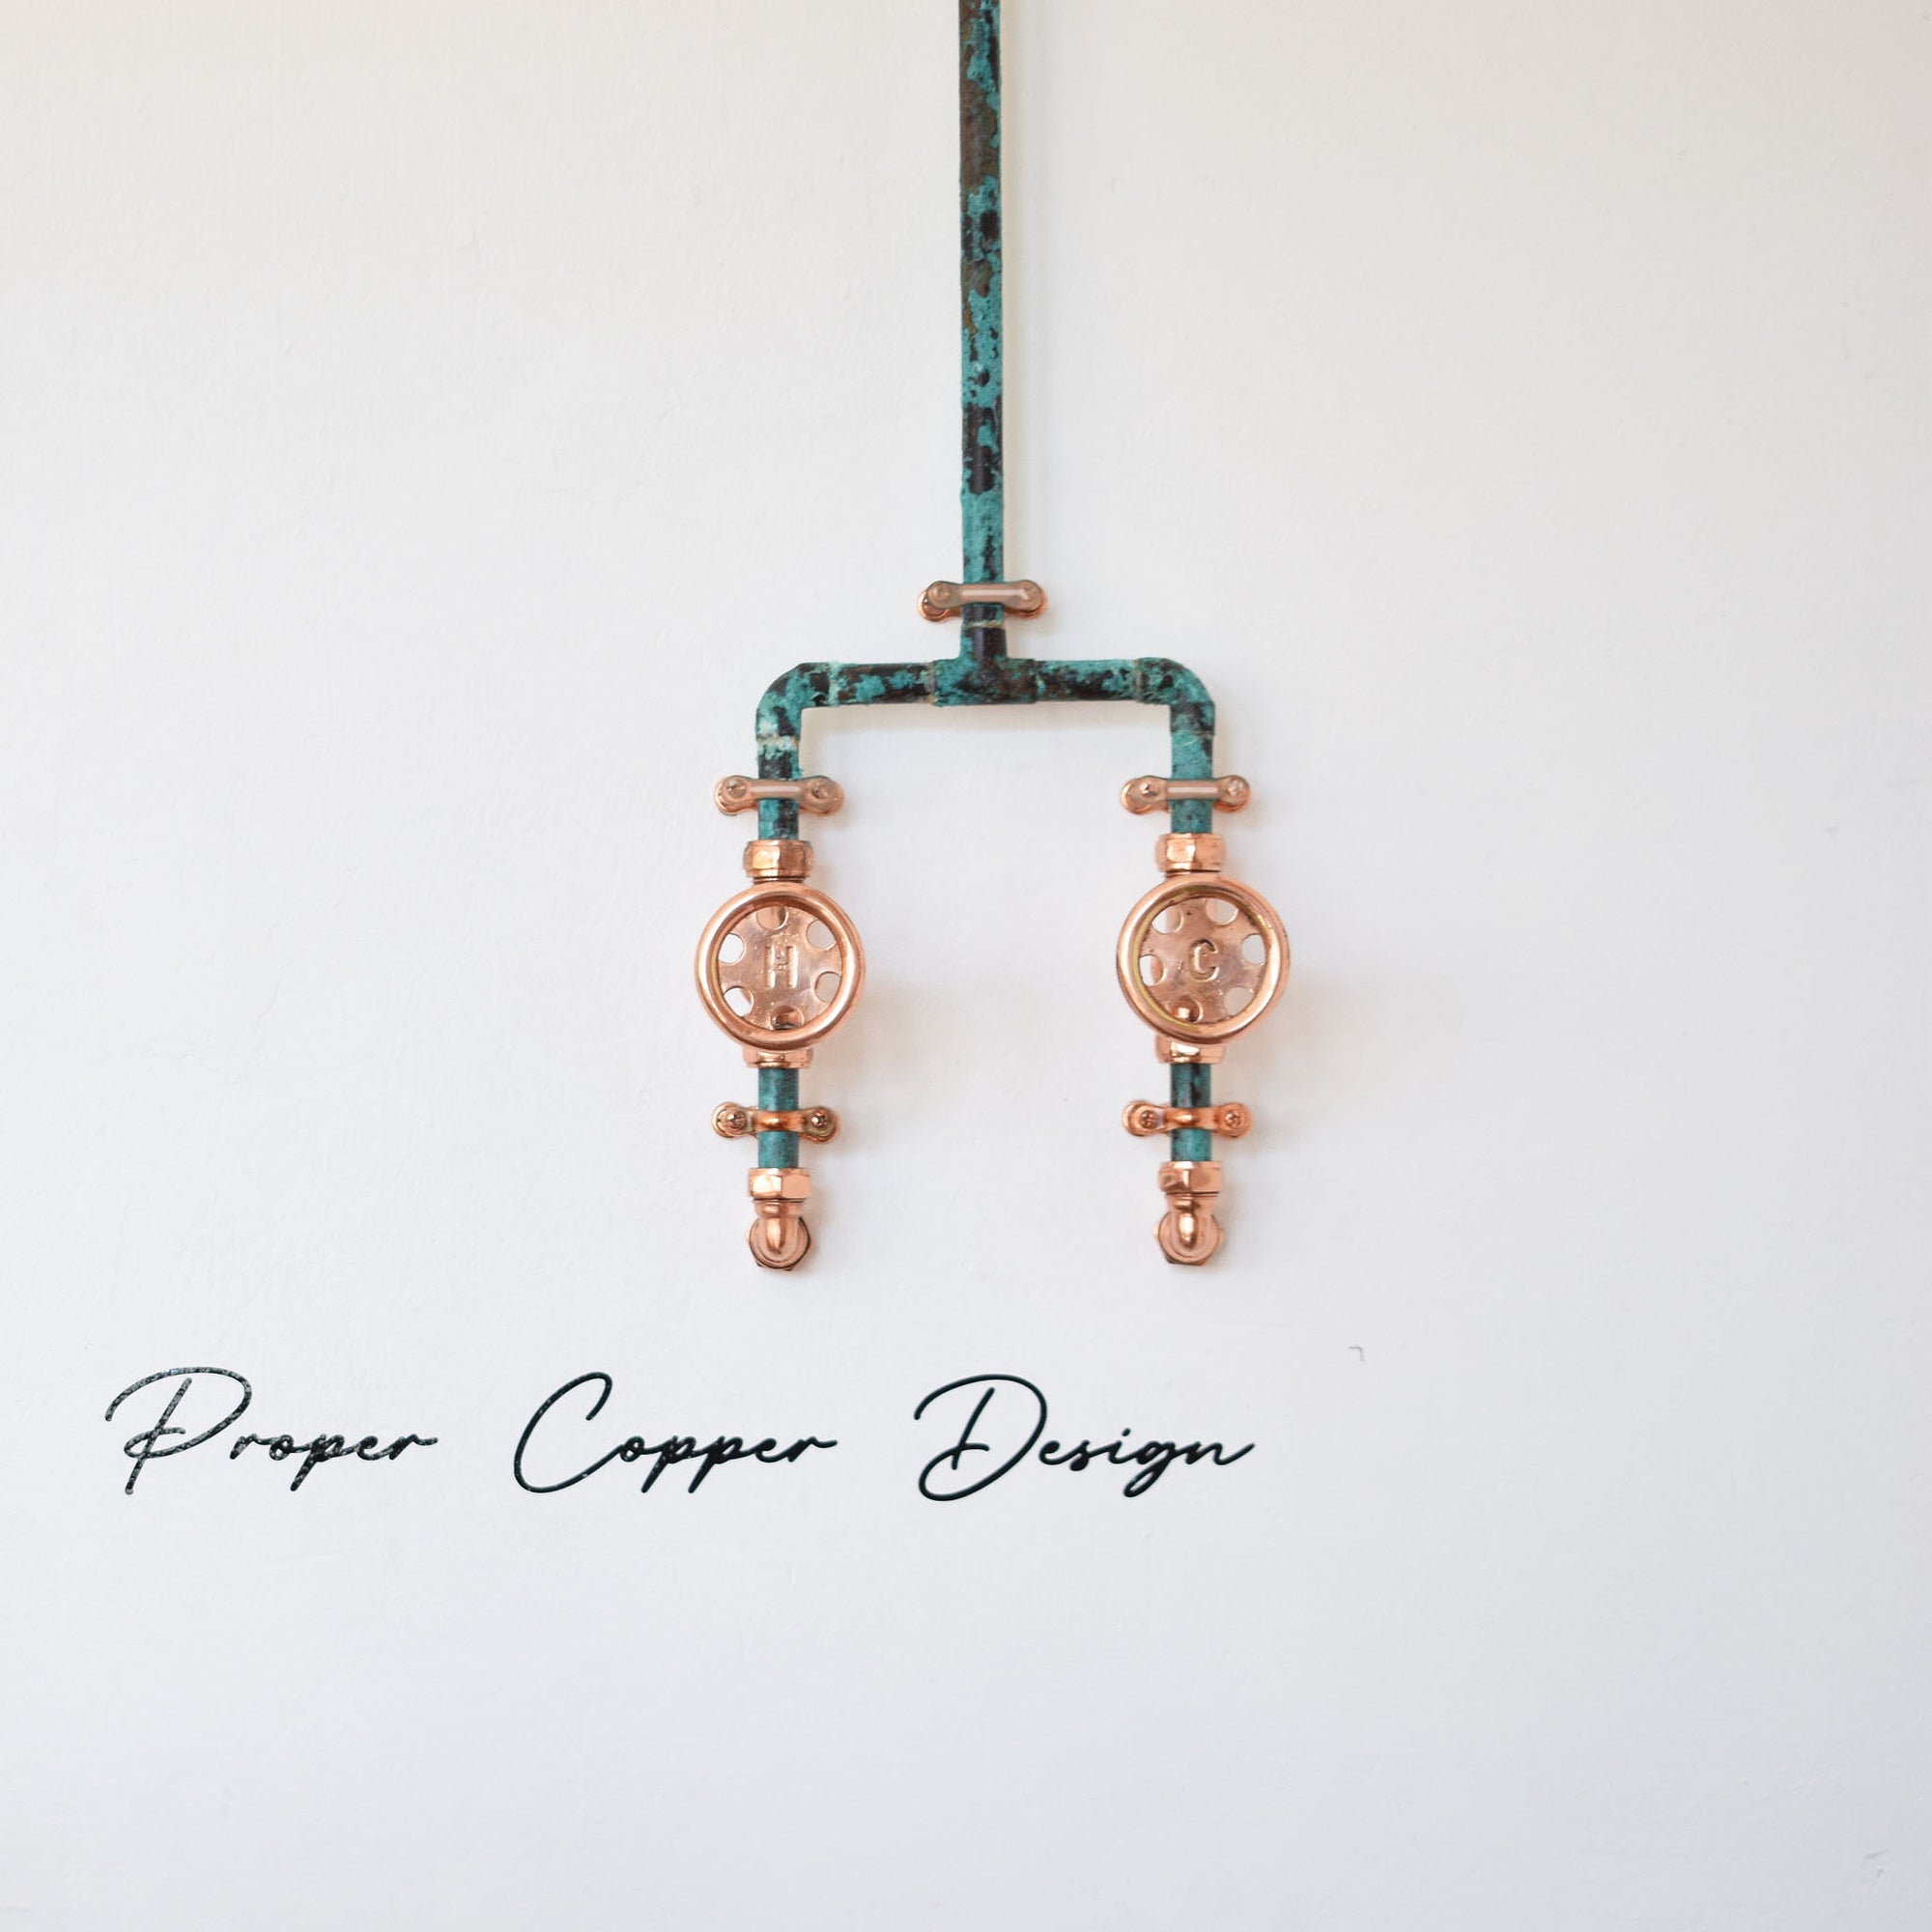 copper and Verdigris mixer taps custom shower